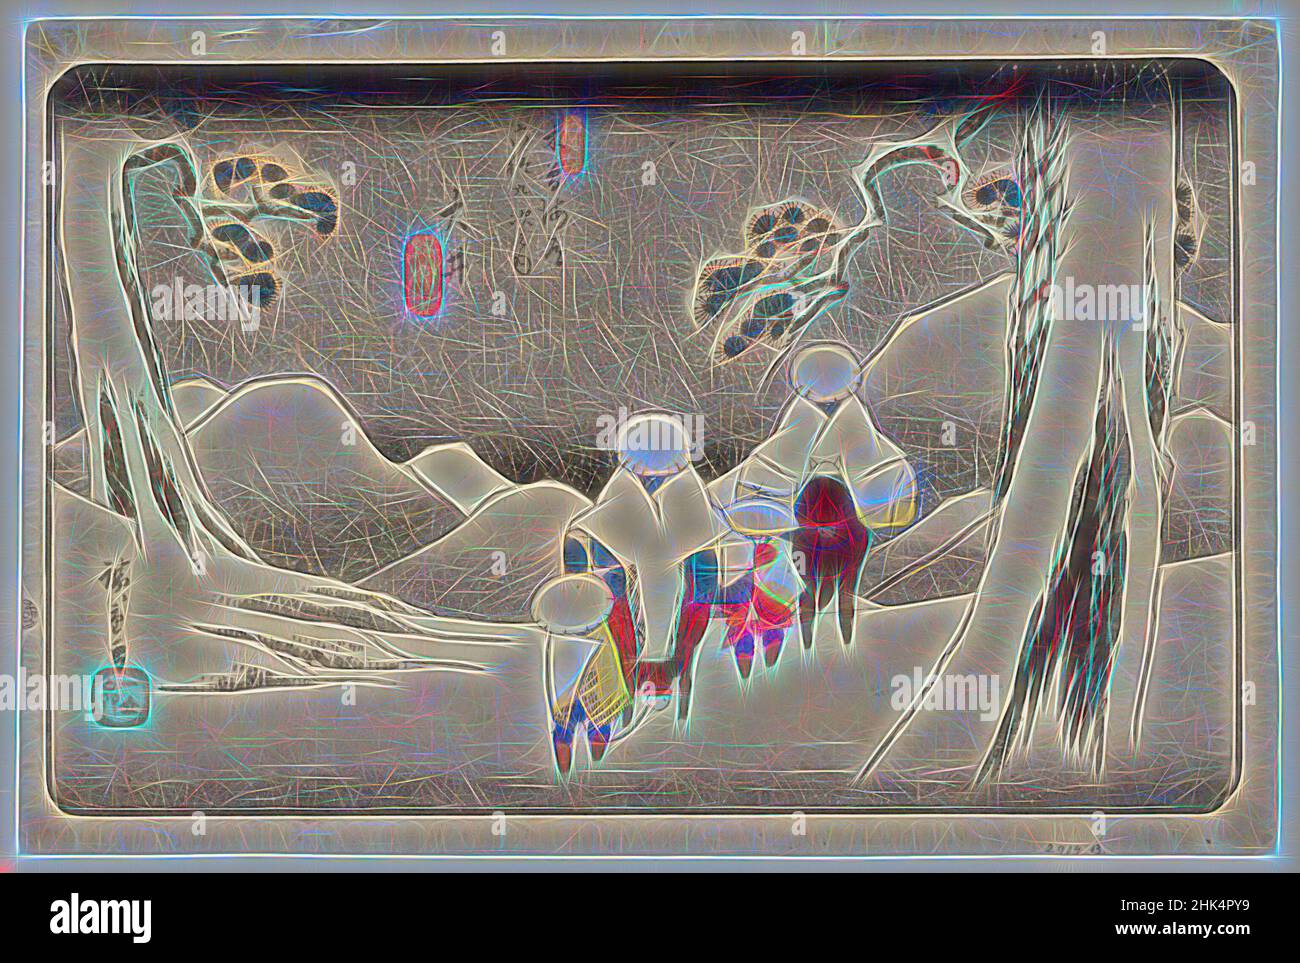 Inspirado por Oi, de sesenta y nueve estaciones en la autopista de Kisokaido, Kisokaido rokujukyu tsugi no uchi, Utagawa Hiroshige, Ando, japonés, 1797-1858, Impresión de bloques de madera en color sobre papel, Japón, ca. 1843, Periodo Edo, Hoja: 9 3/16 x 14 5/8 pulg., 24,8 x 37,3 cm, nieve, Reimaginado por Artotop. Arte clásico reinventado con un toque moderno. Diseño de brillo cálido y alegre y luminosidad e radiación de rayos de luz. Fotografía inspirada en el surrealismo y el futurismo, que abarca la energía dinámica de la tecnología moderna, el movimiento, la velocidad y la revolución de la cultura Foto de stock